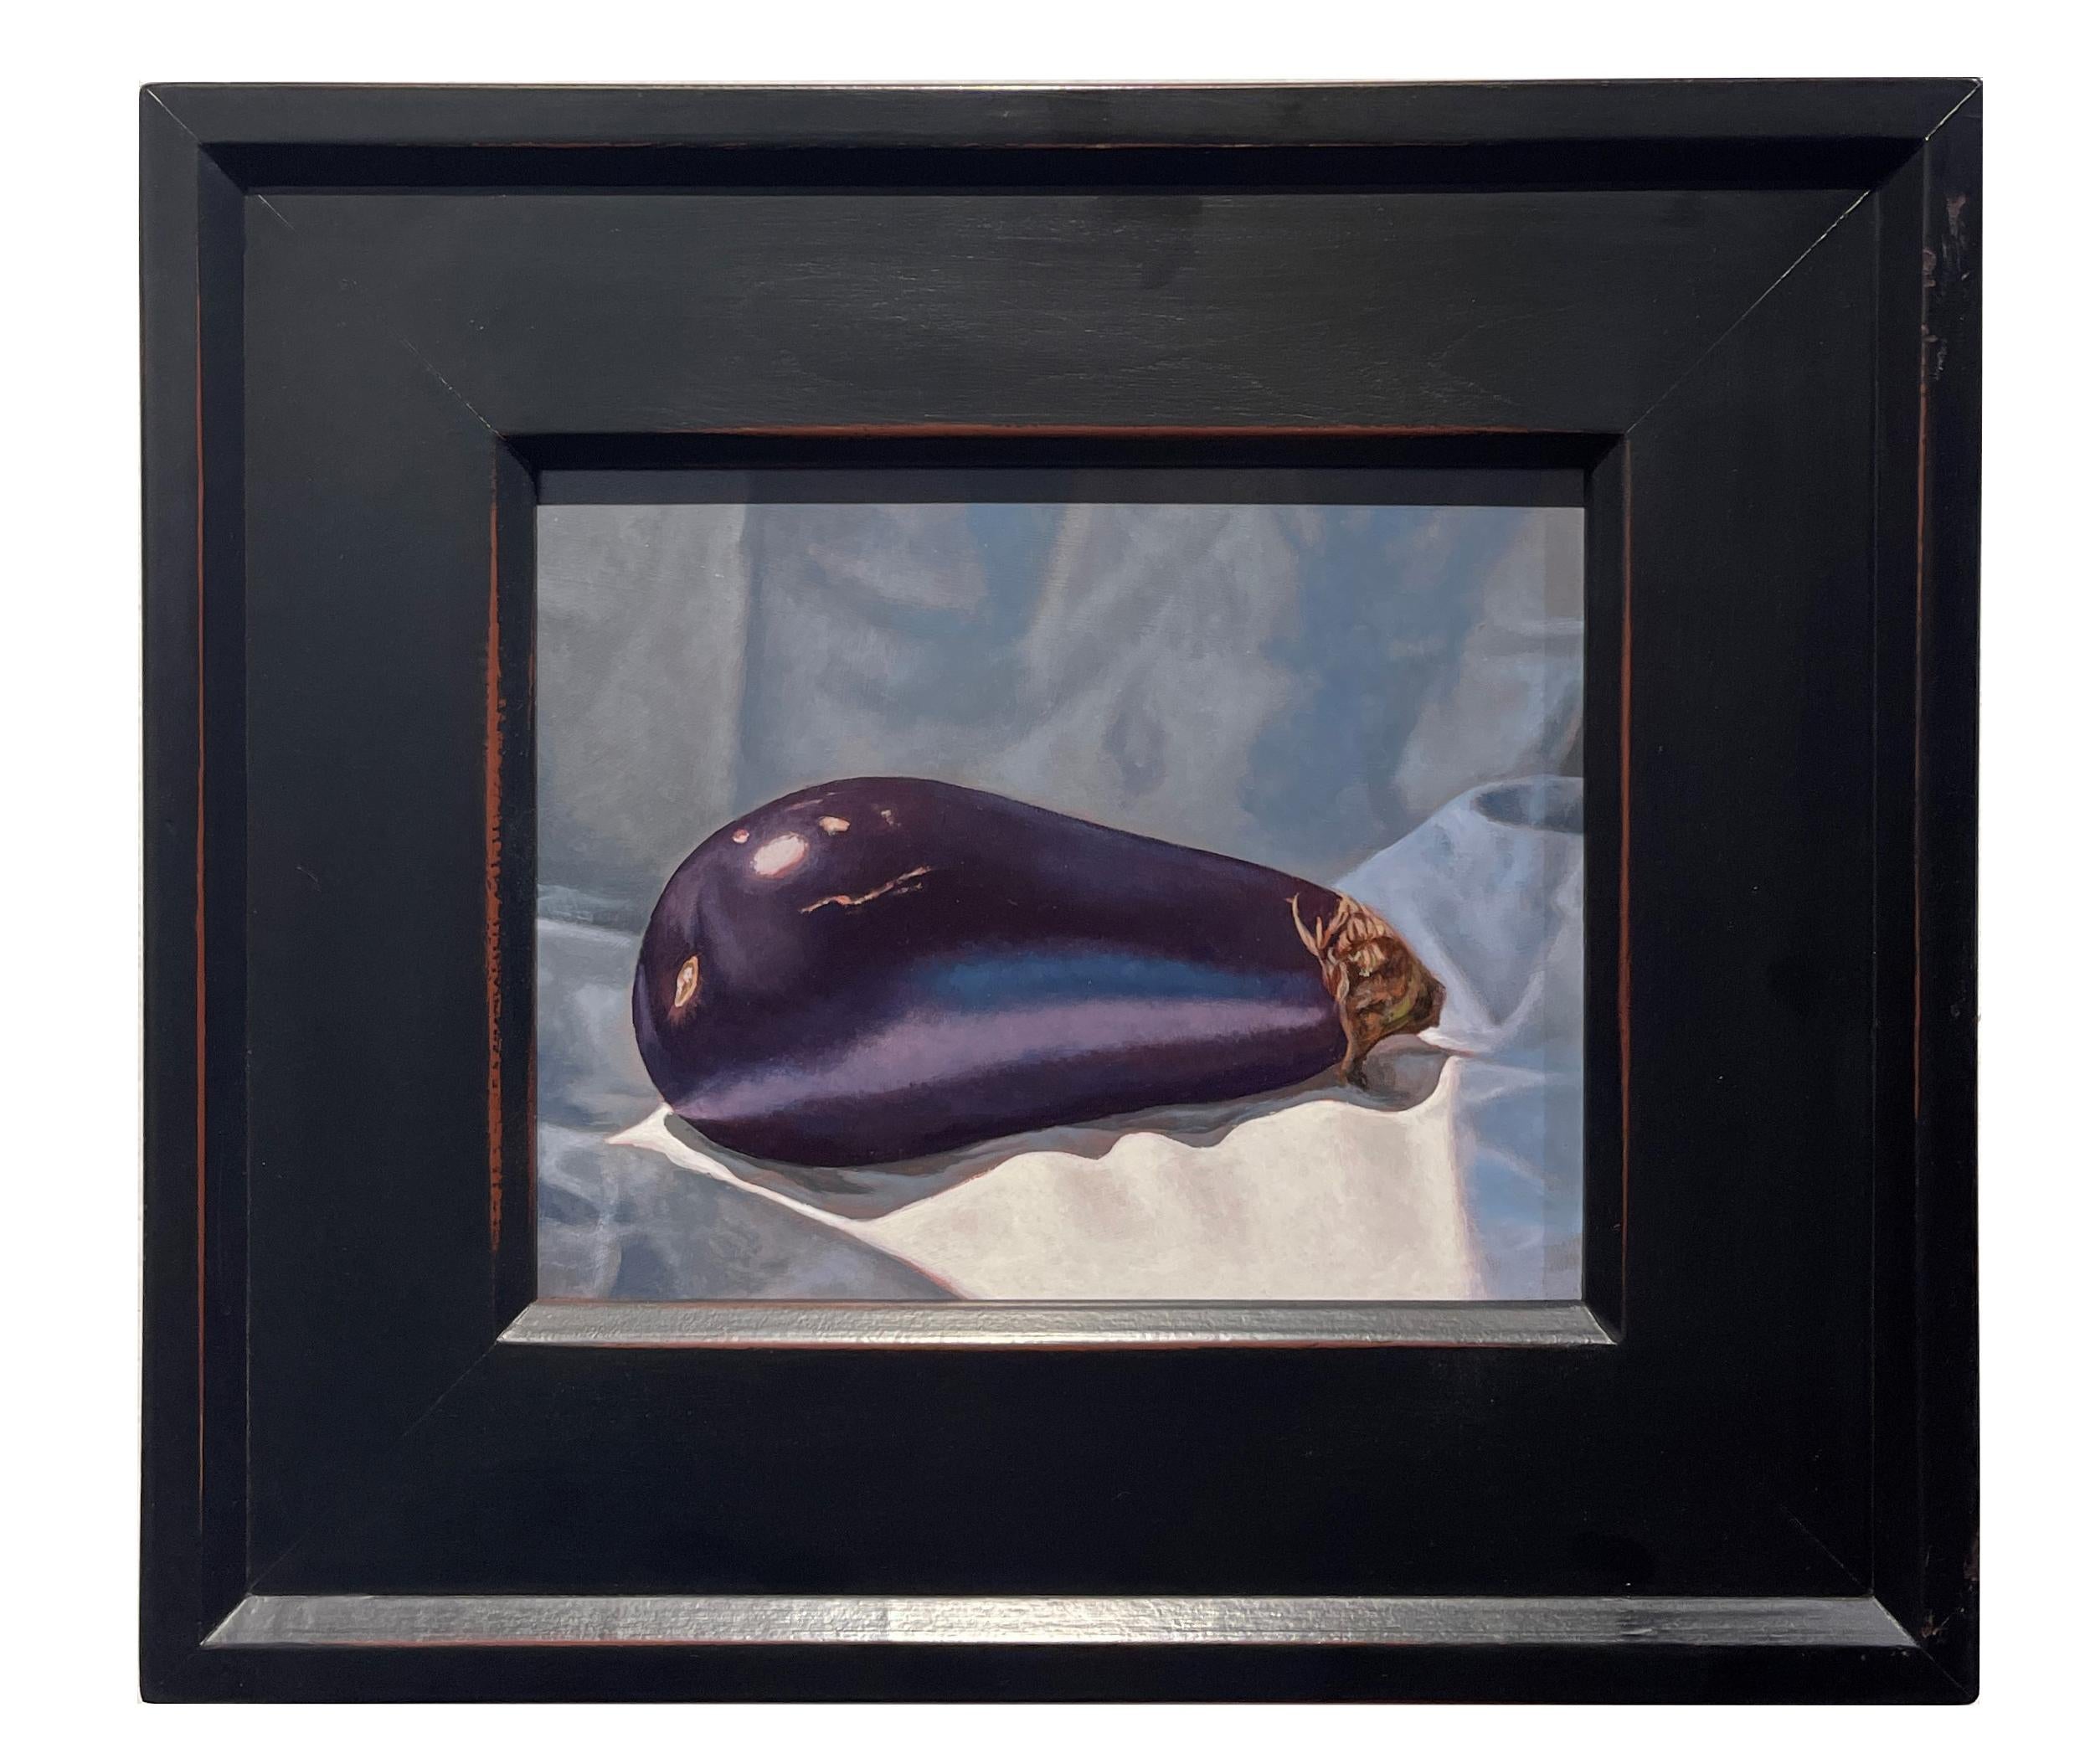 Eggplant – Stillleben mit einer einzigen Aubergine auf grau-blauem Satin, gerahmt – Painting von Jeff Aeling